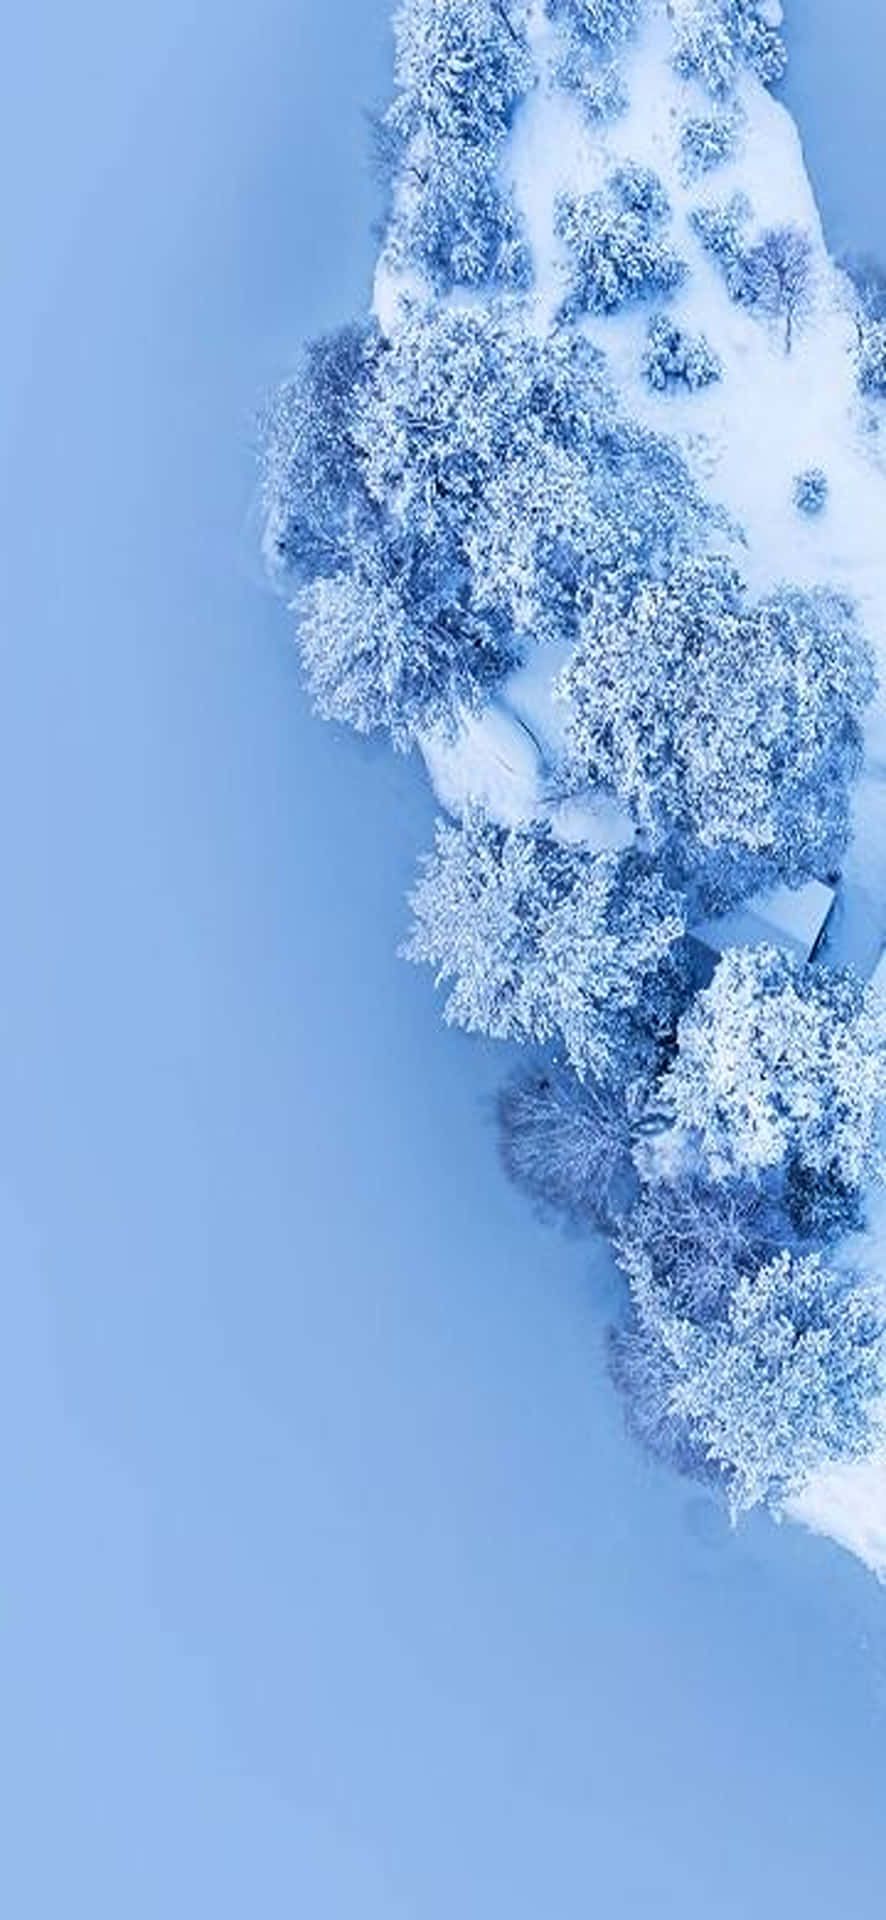 Enjoy a winter wonderland with this beautiful snowscape desktop wallpaper. Wallpaper